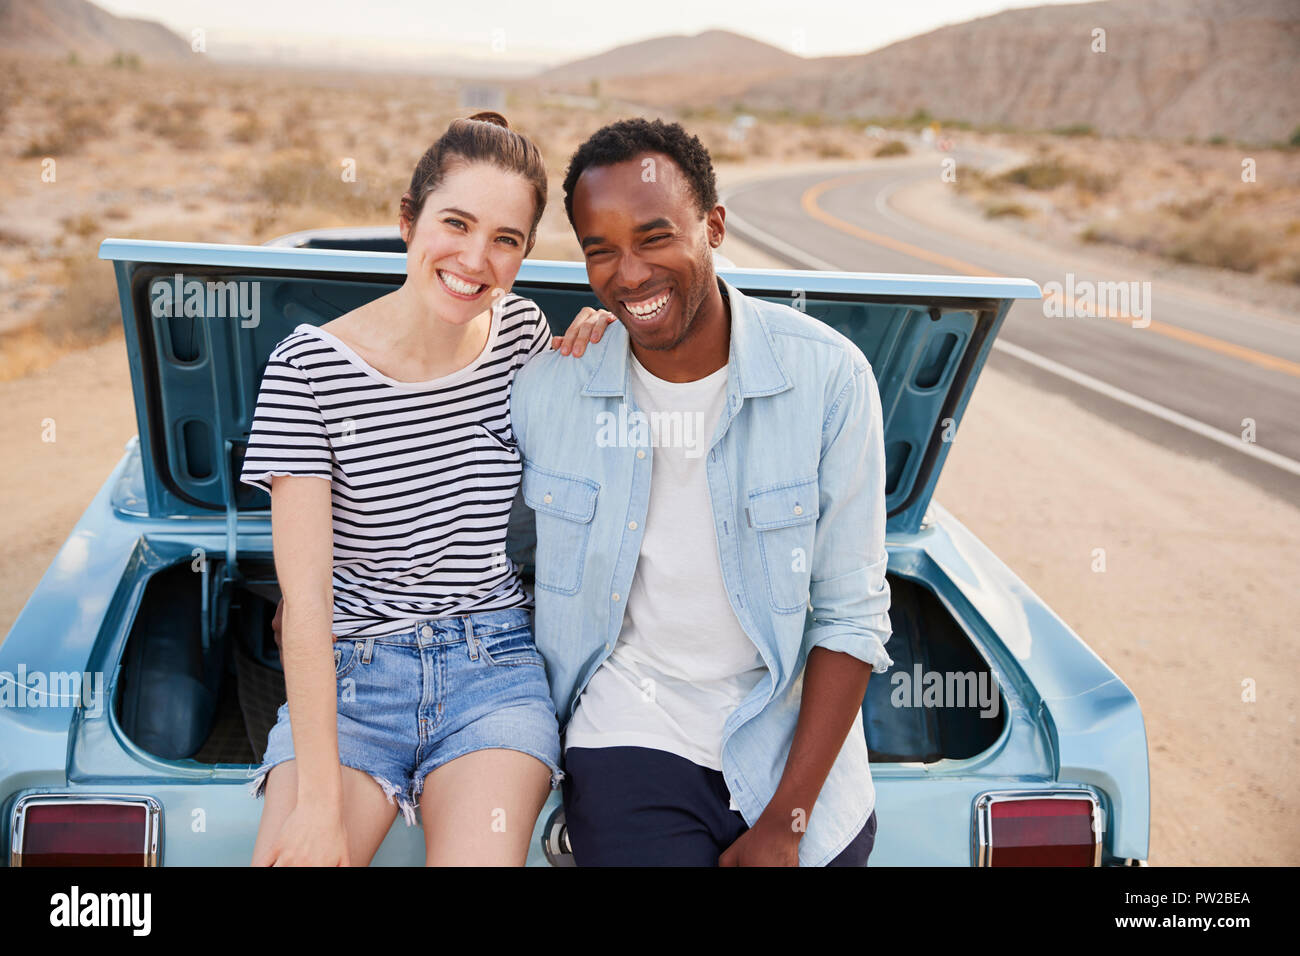 USA, New Jersey, Happy Paare mit Picknick-Korb im Kofferraum eines Autos  sitzen Stockfotografie - Alamy